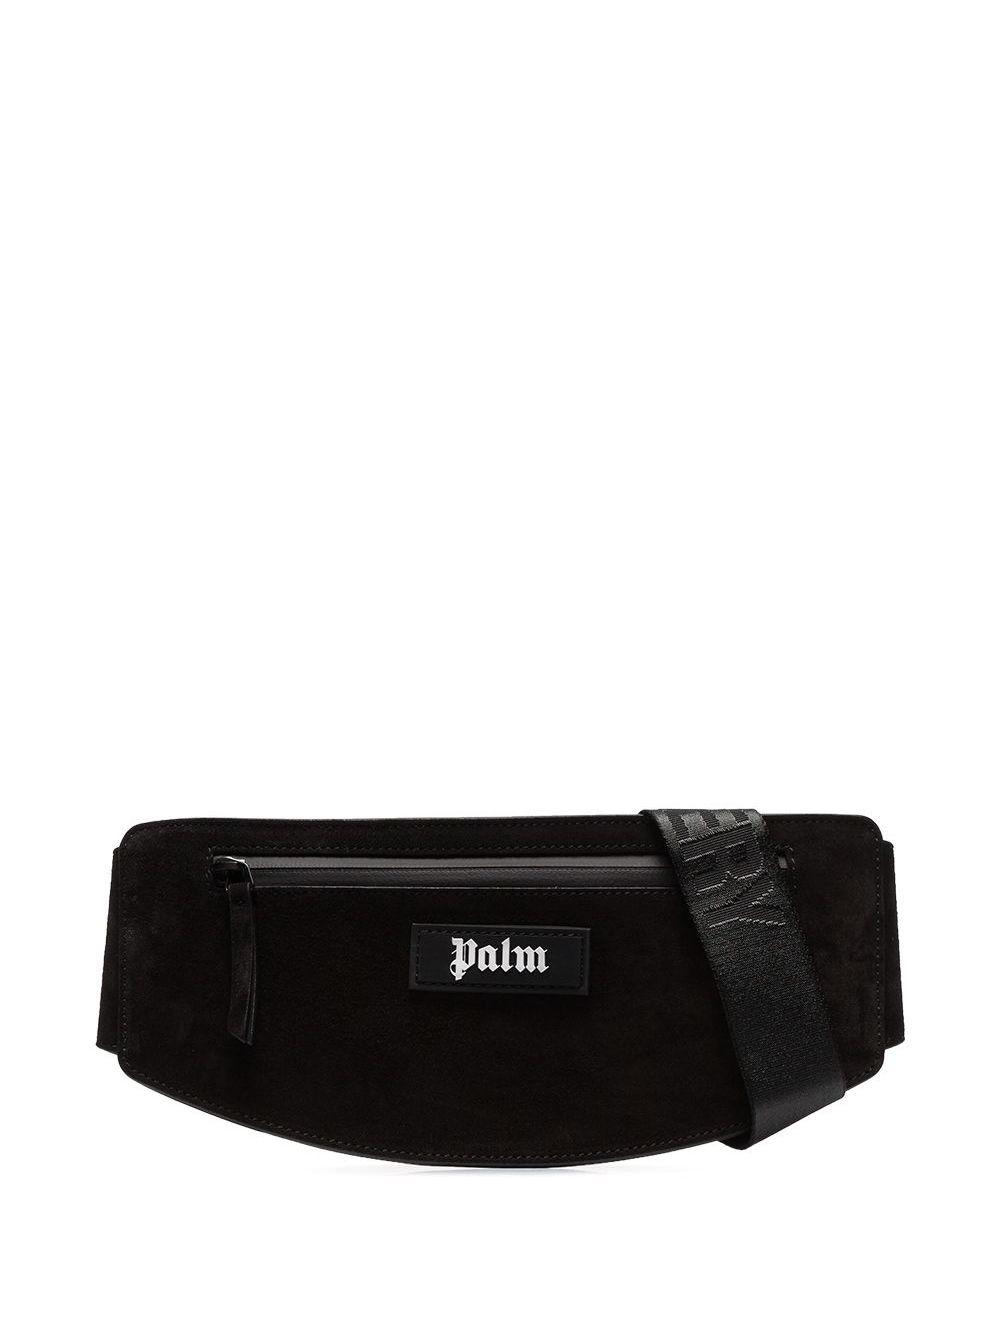 Palm Angels Black Suede Cross Body Belt Bag for Men - Save 23% - Lyst